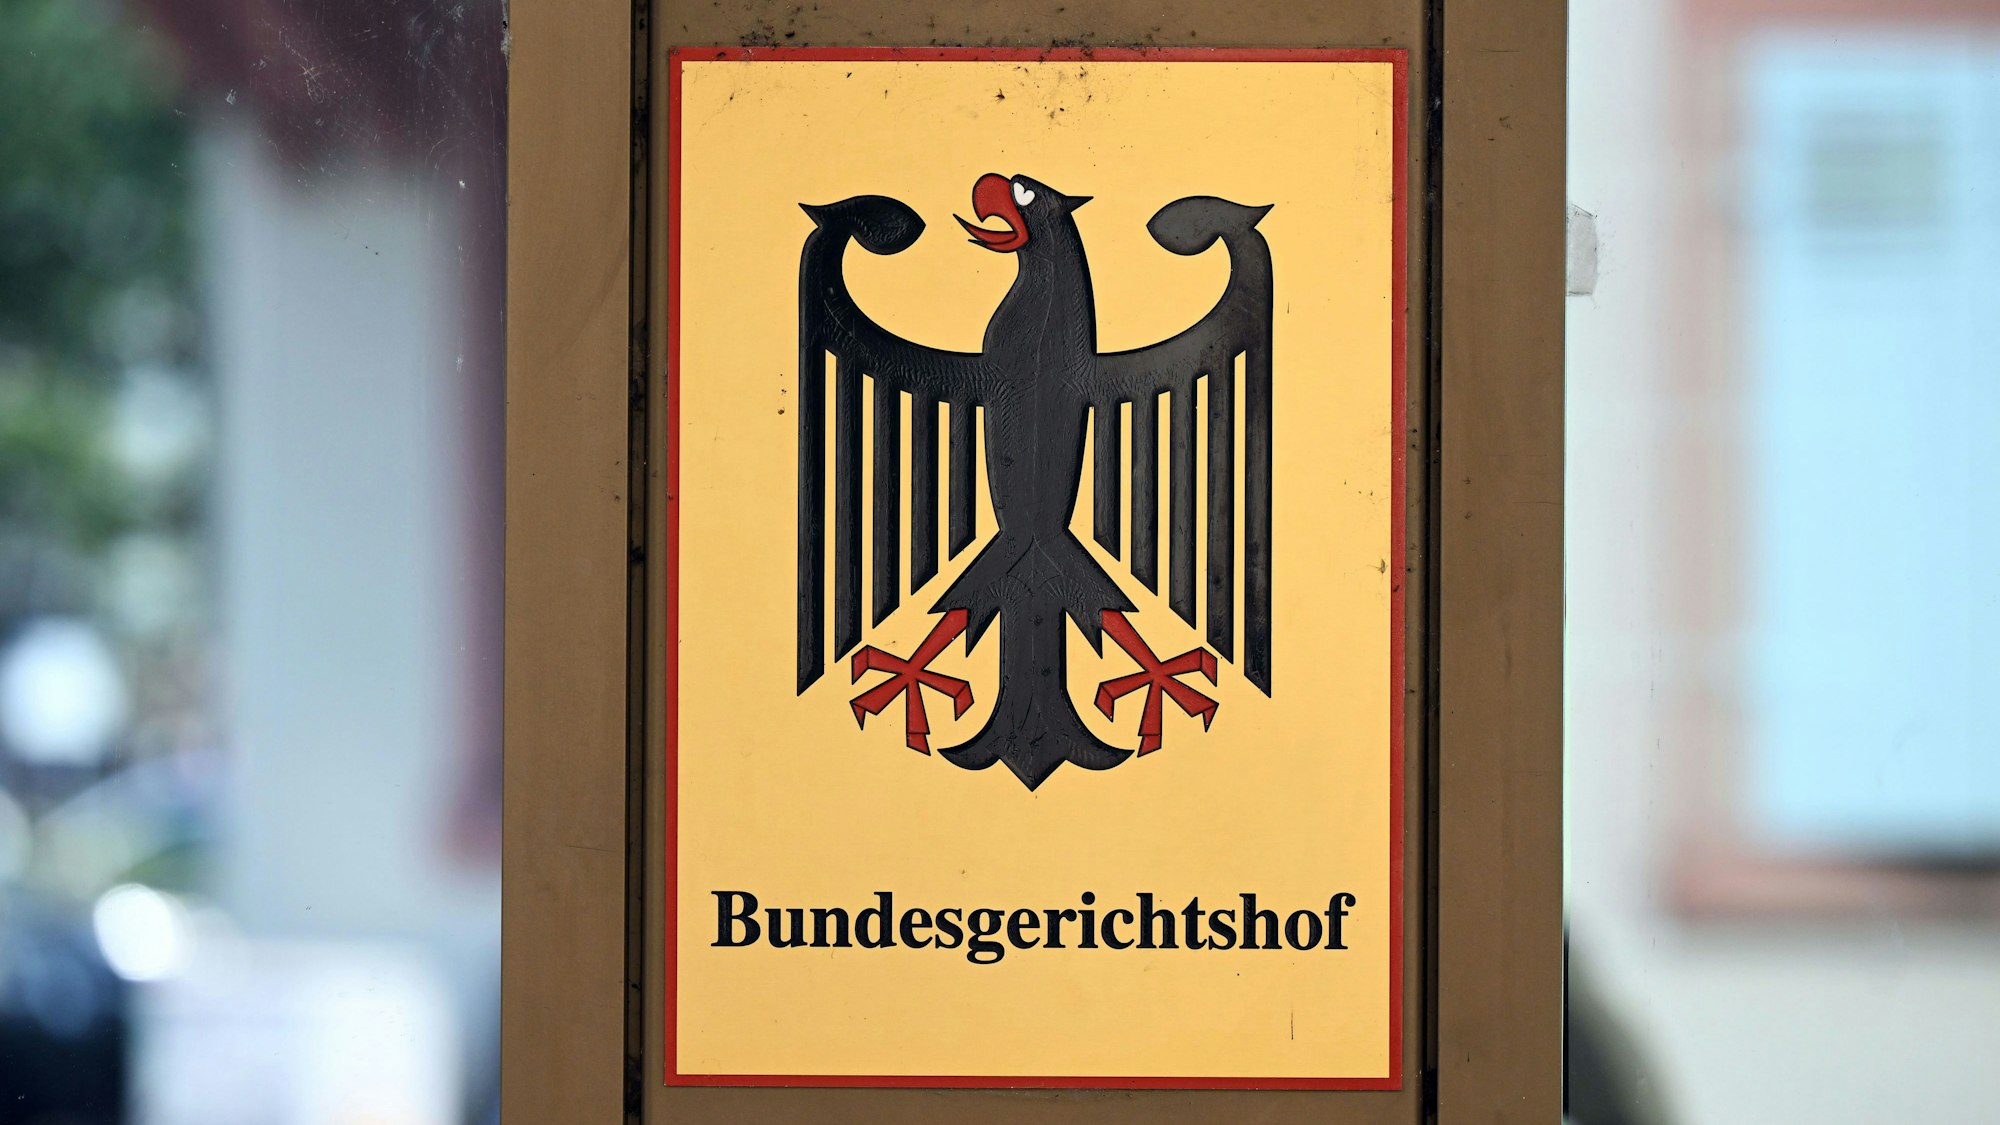 Ein Hinweisschild mit dem Bundesadler und dem Schriftzug "Bundesgerichtshof", aufgenommen vor dem Bundesgerichtshof (BGH).